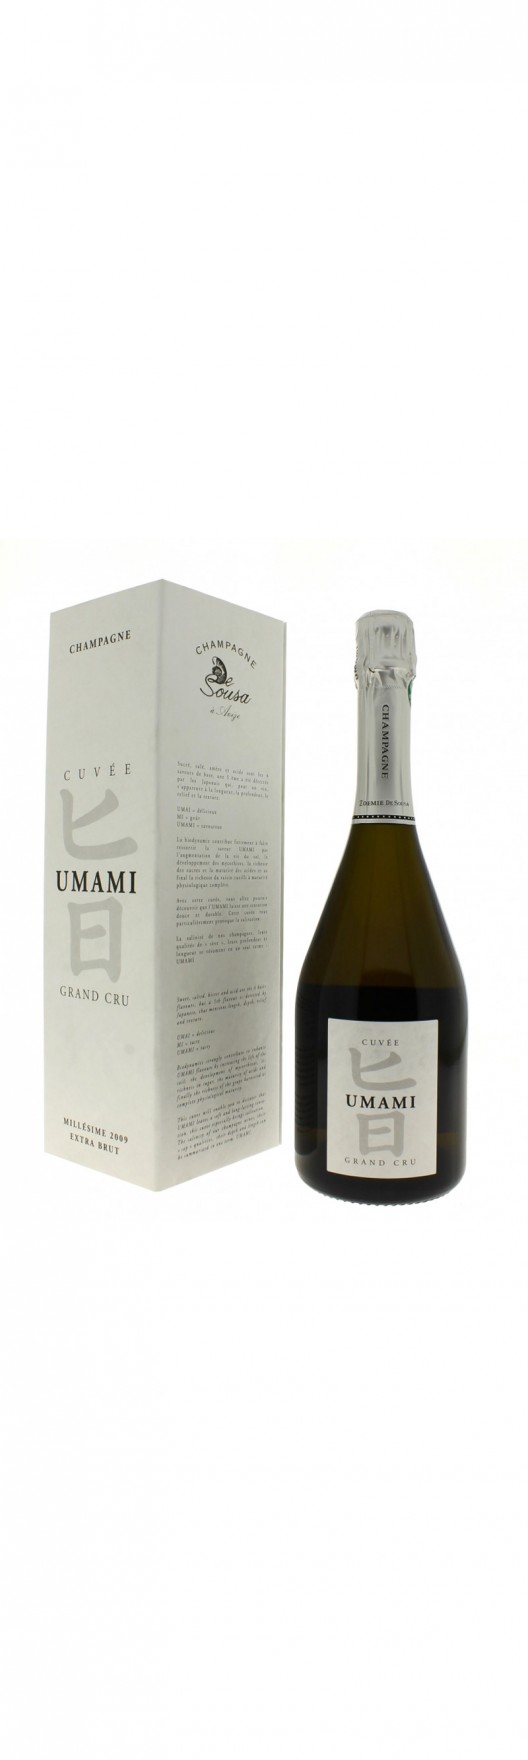 Champagne De Sousa Launches Its New Cuvée Umami